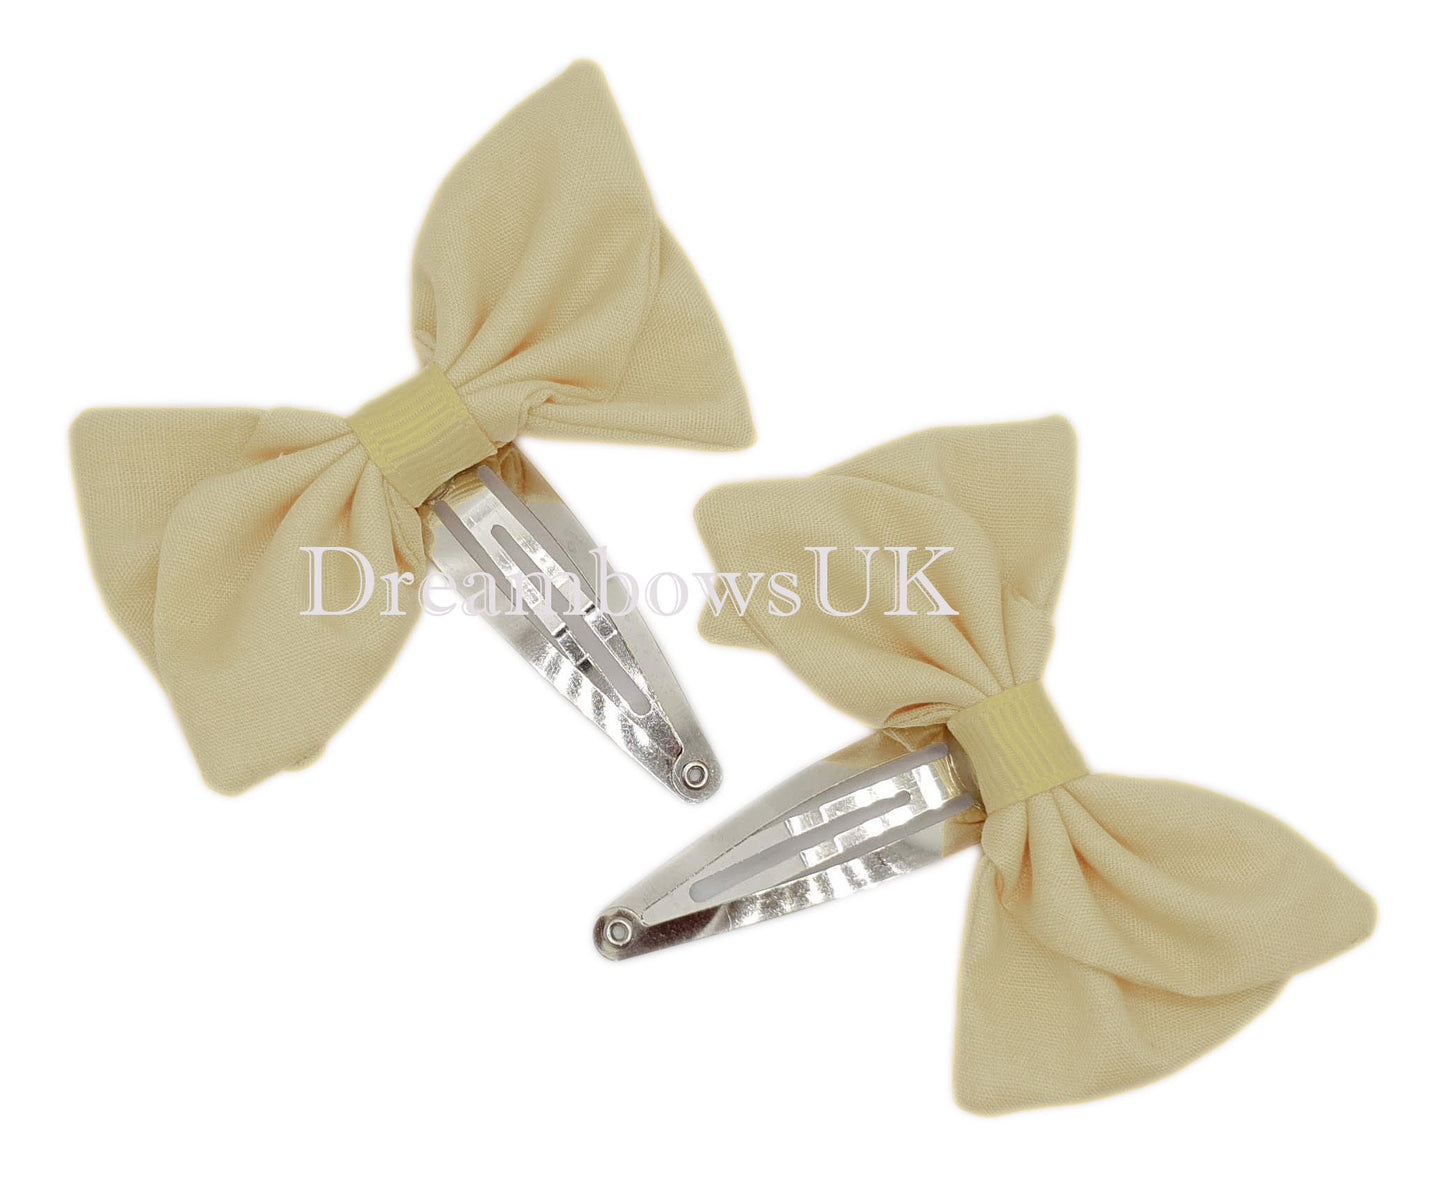 2x Cream/ivory fabric hair bows